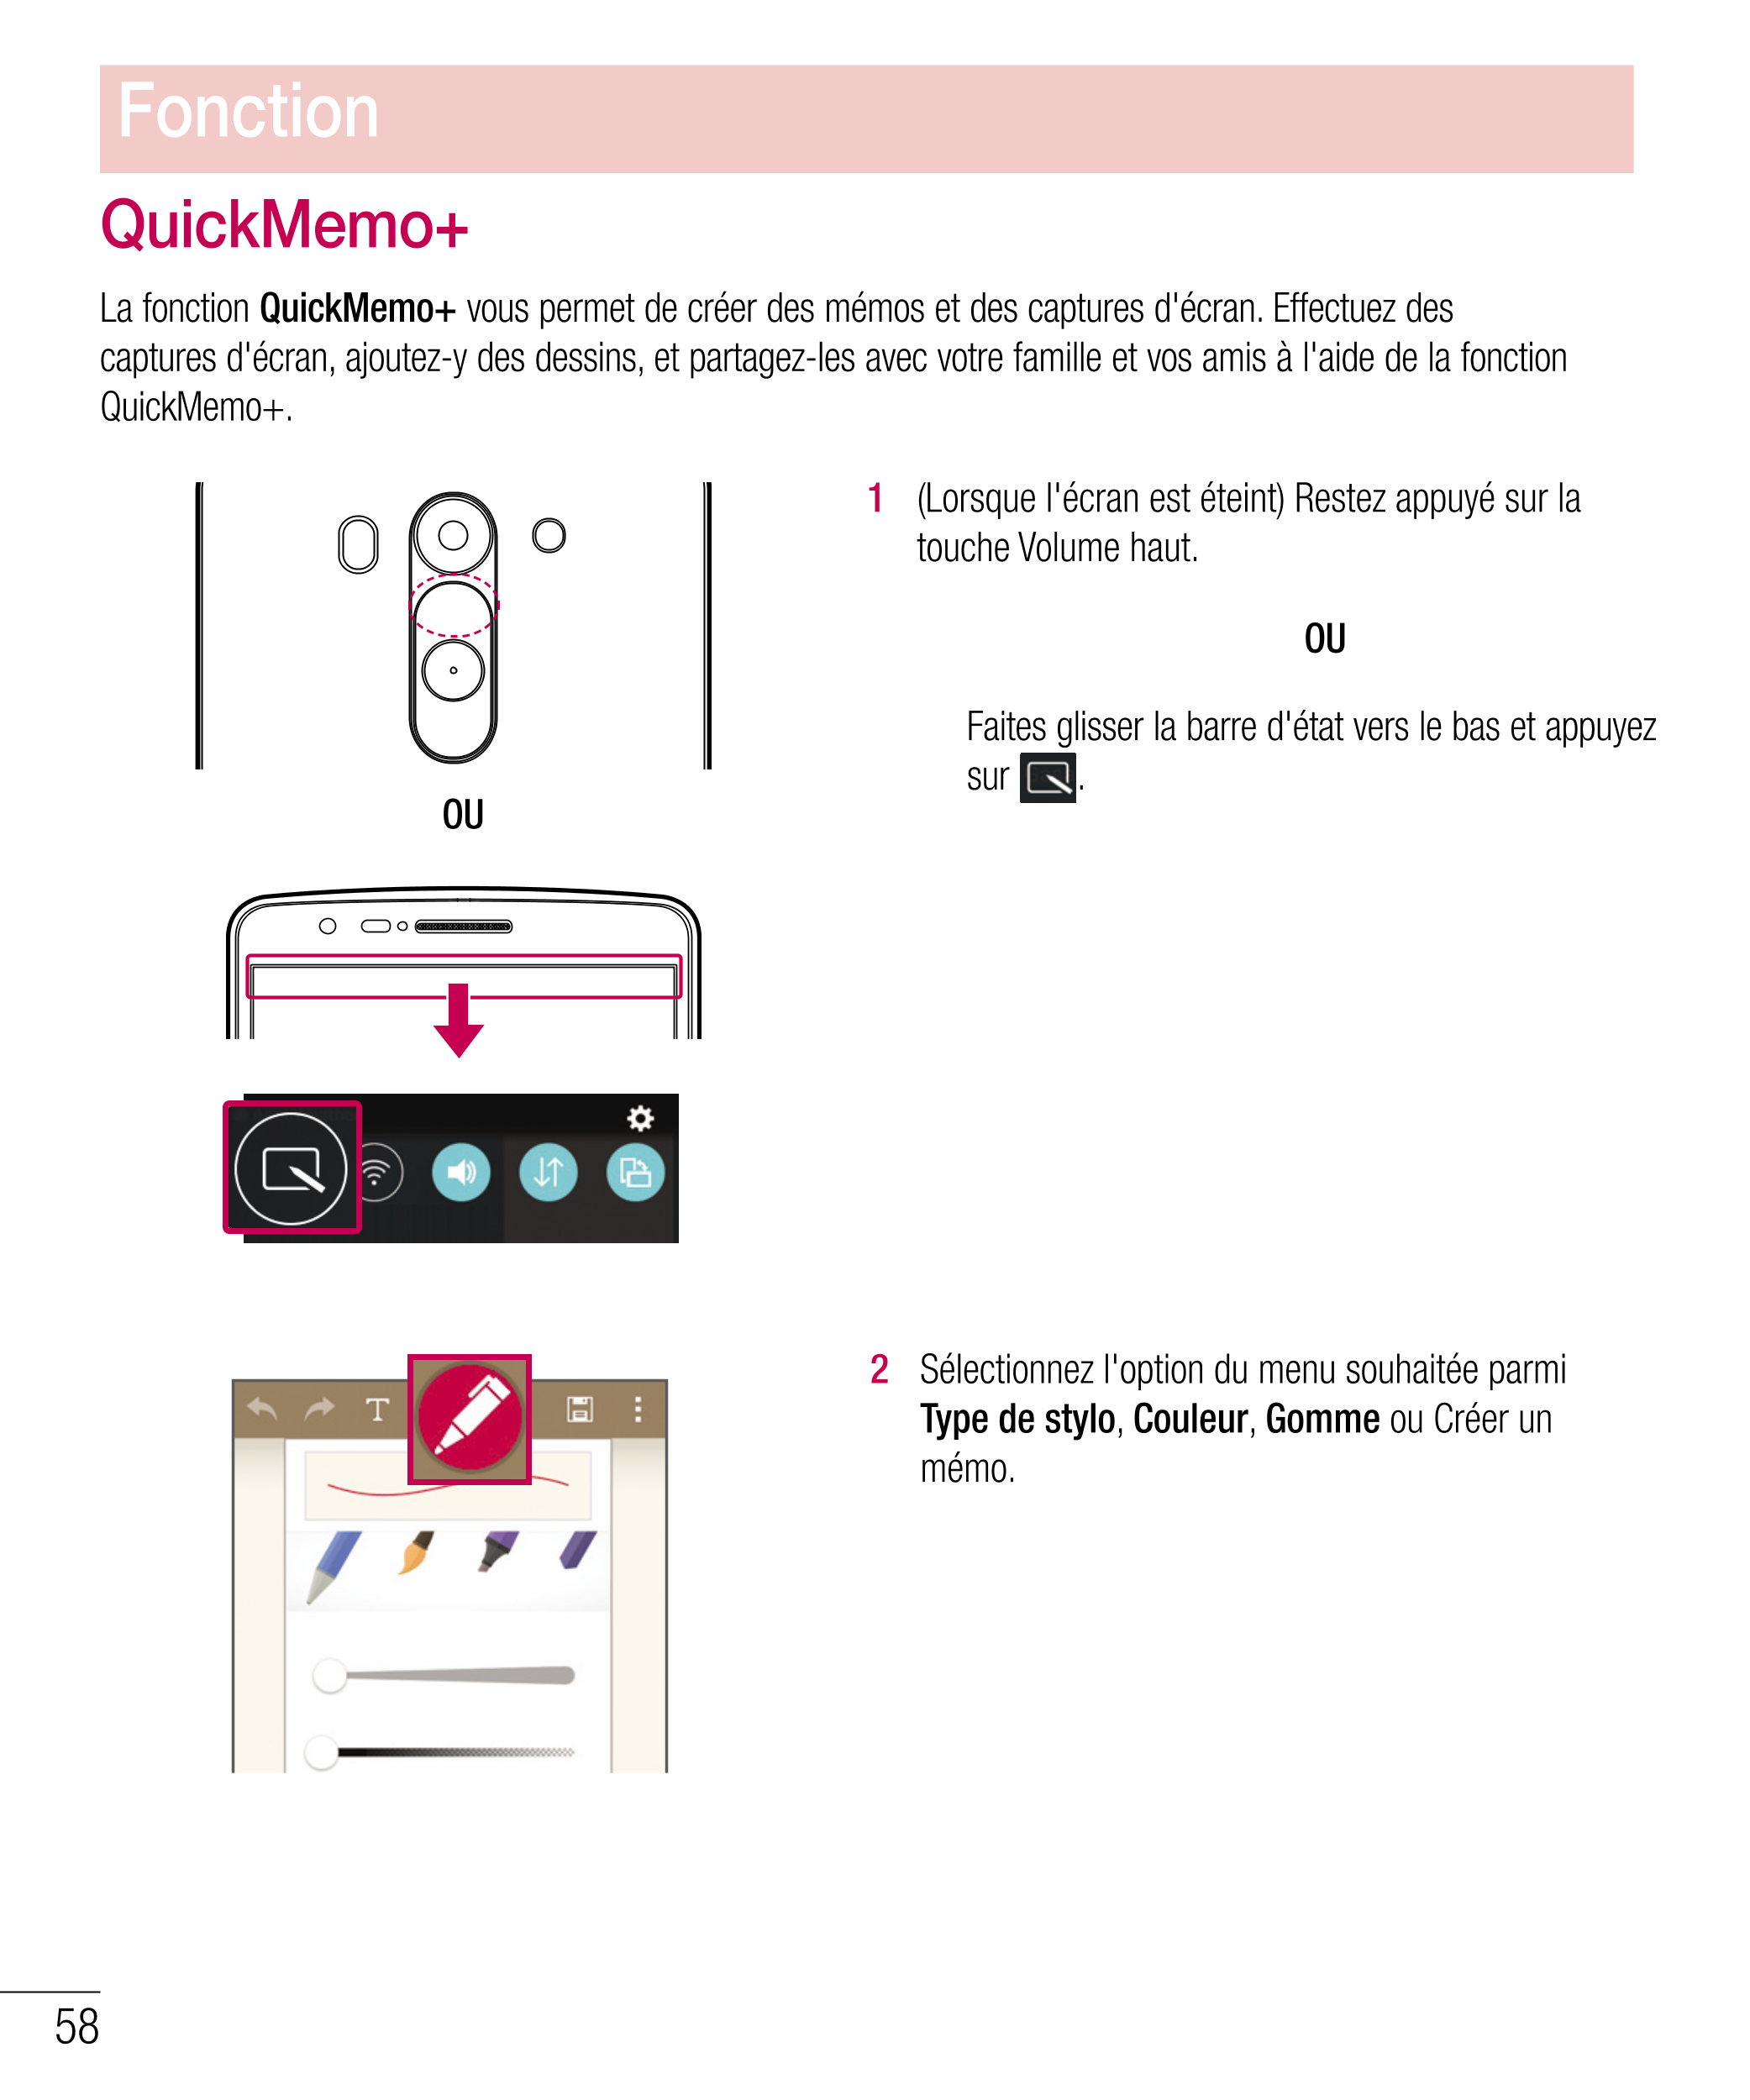 Fonction
QuickMemo+
La fonction  QuickMemo+  vous permet de créer des mémos et des captures d'écran. Effectuez des 
captures d'é